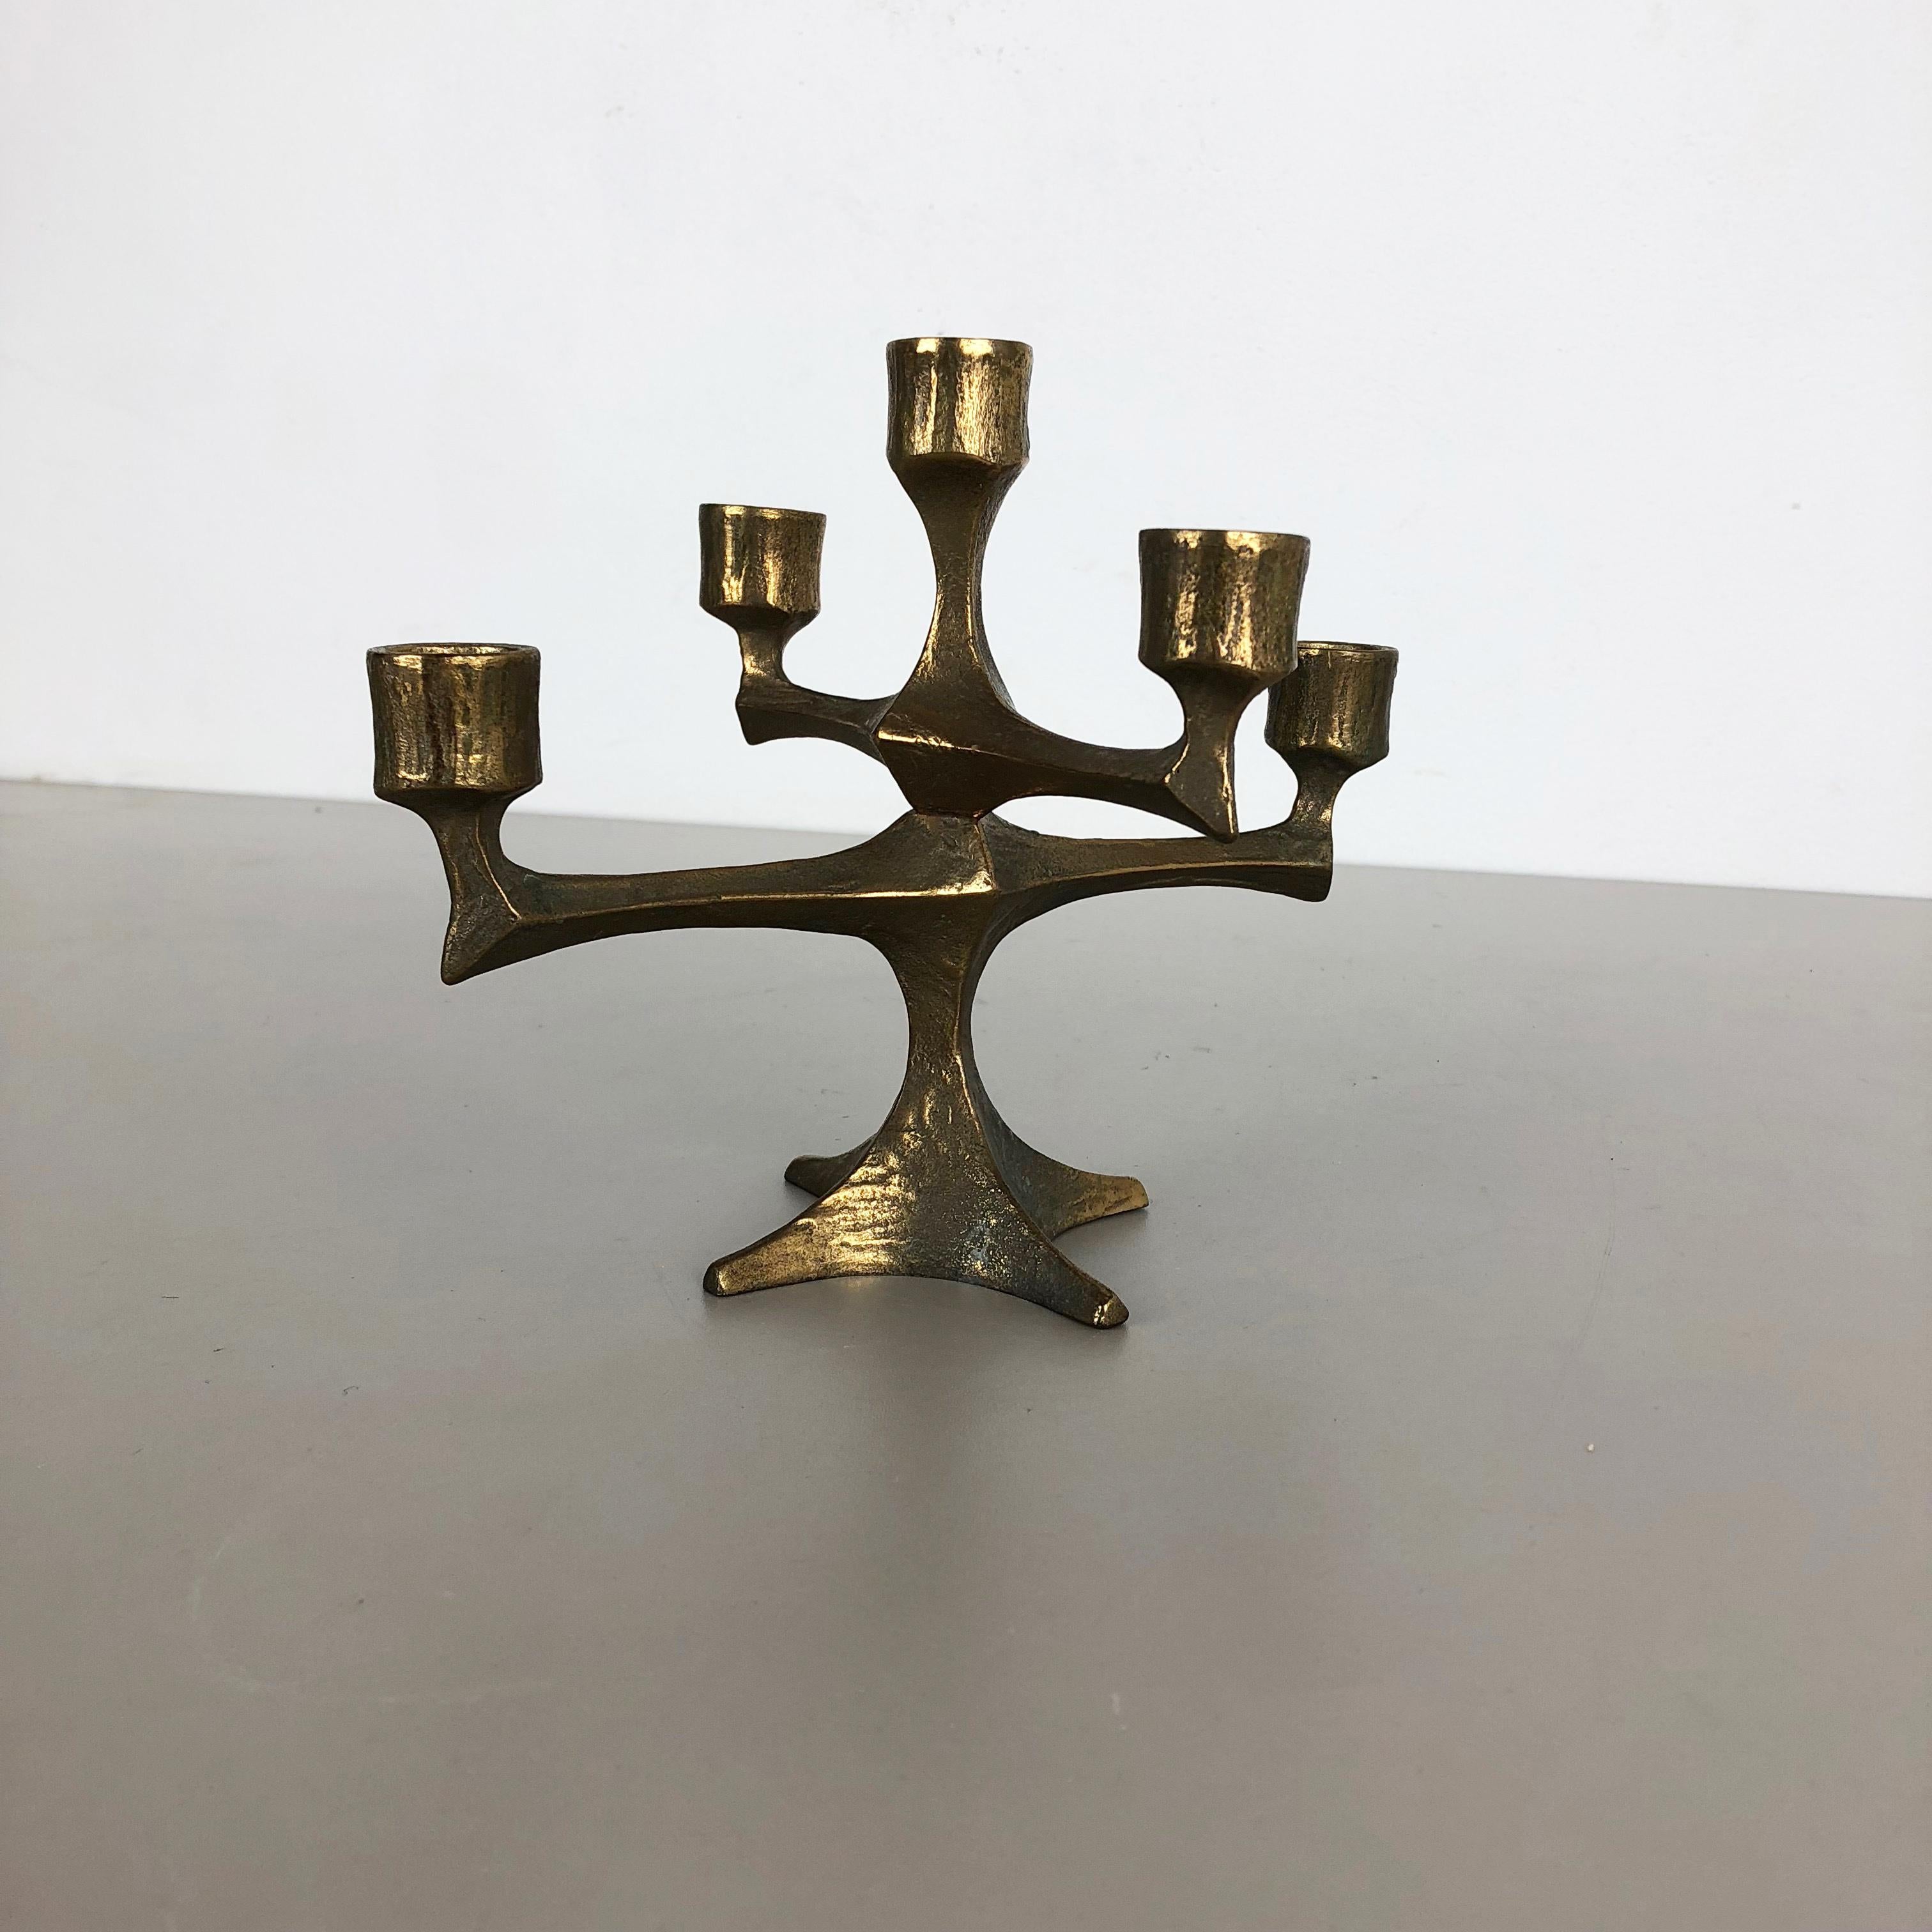 Scandinavian Modern Modernist Vintage Sculptural Brutalist Bronze Metal Candleholder, France, 1970s